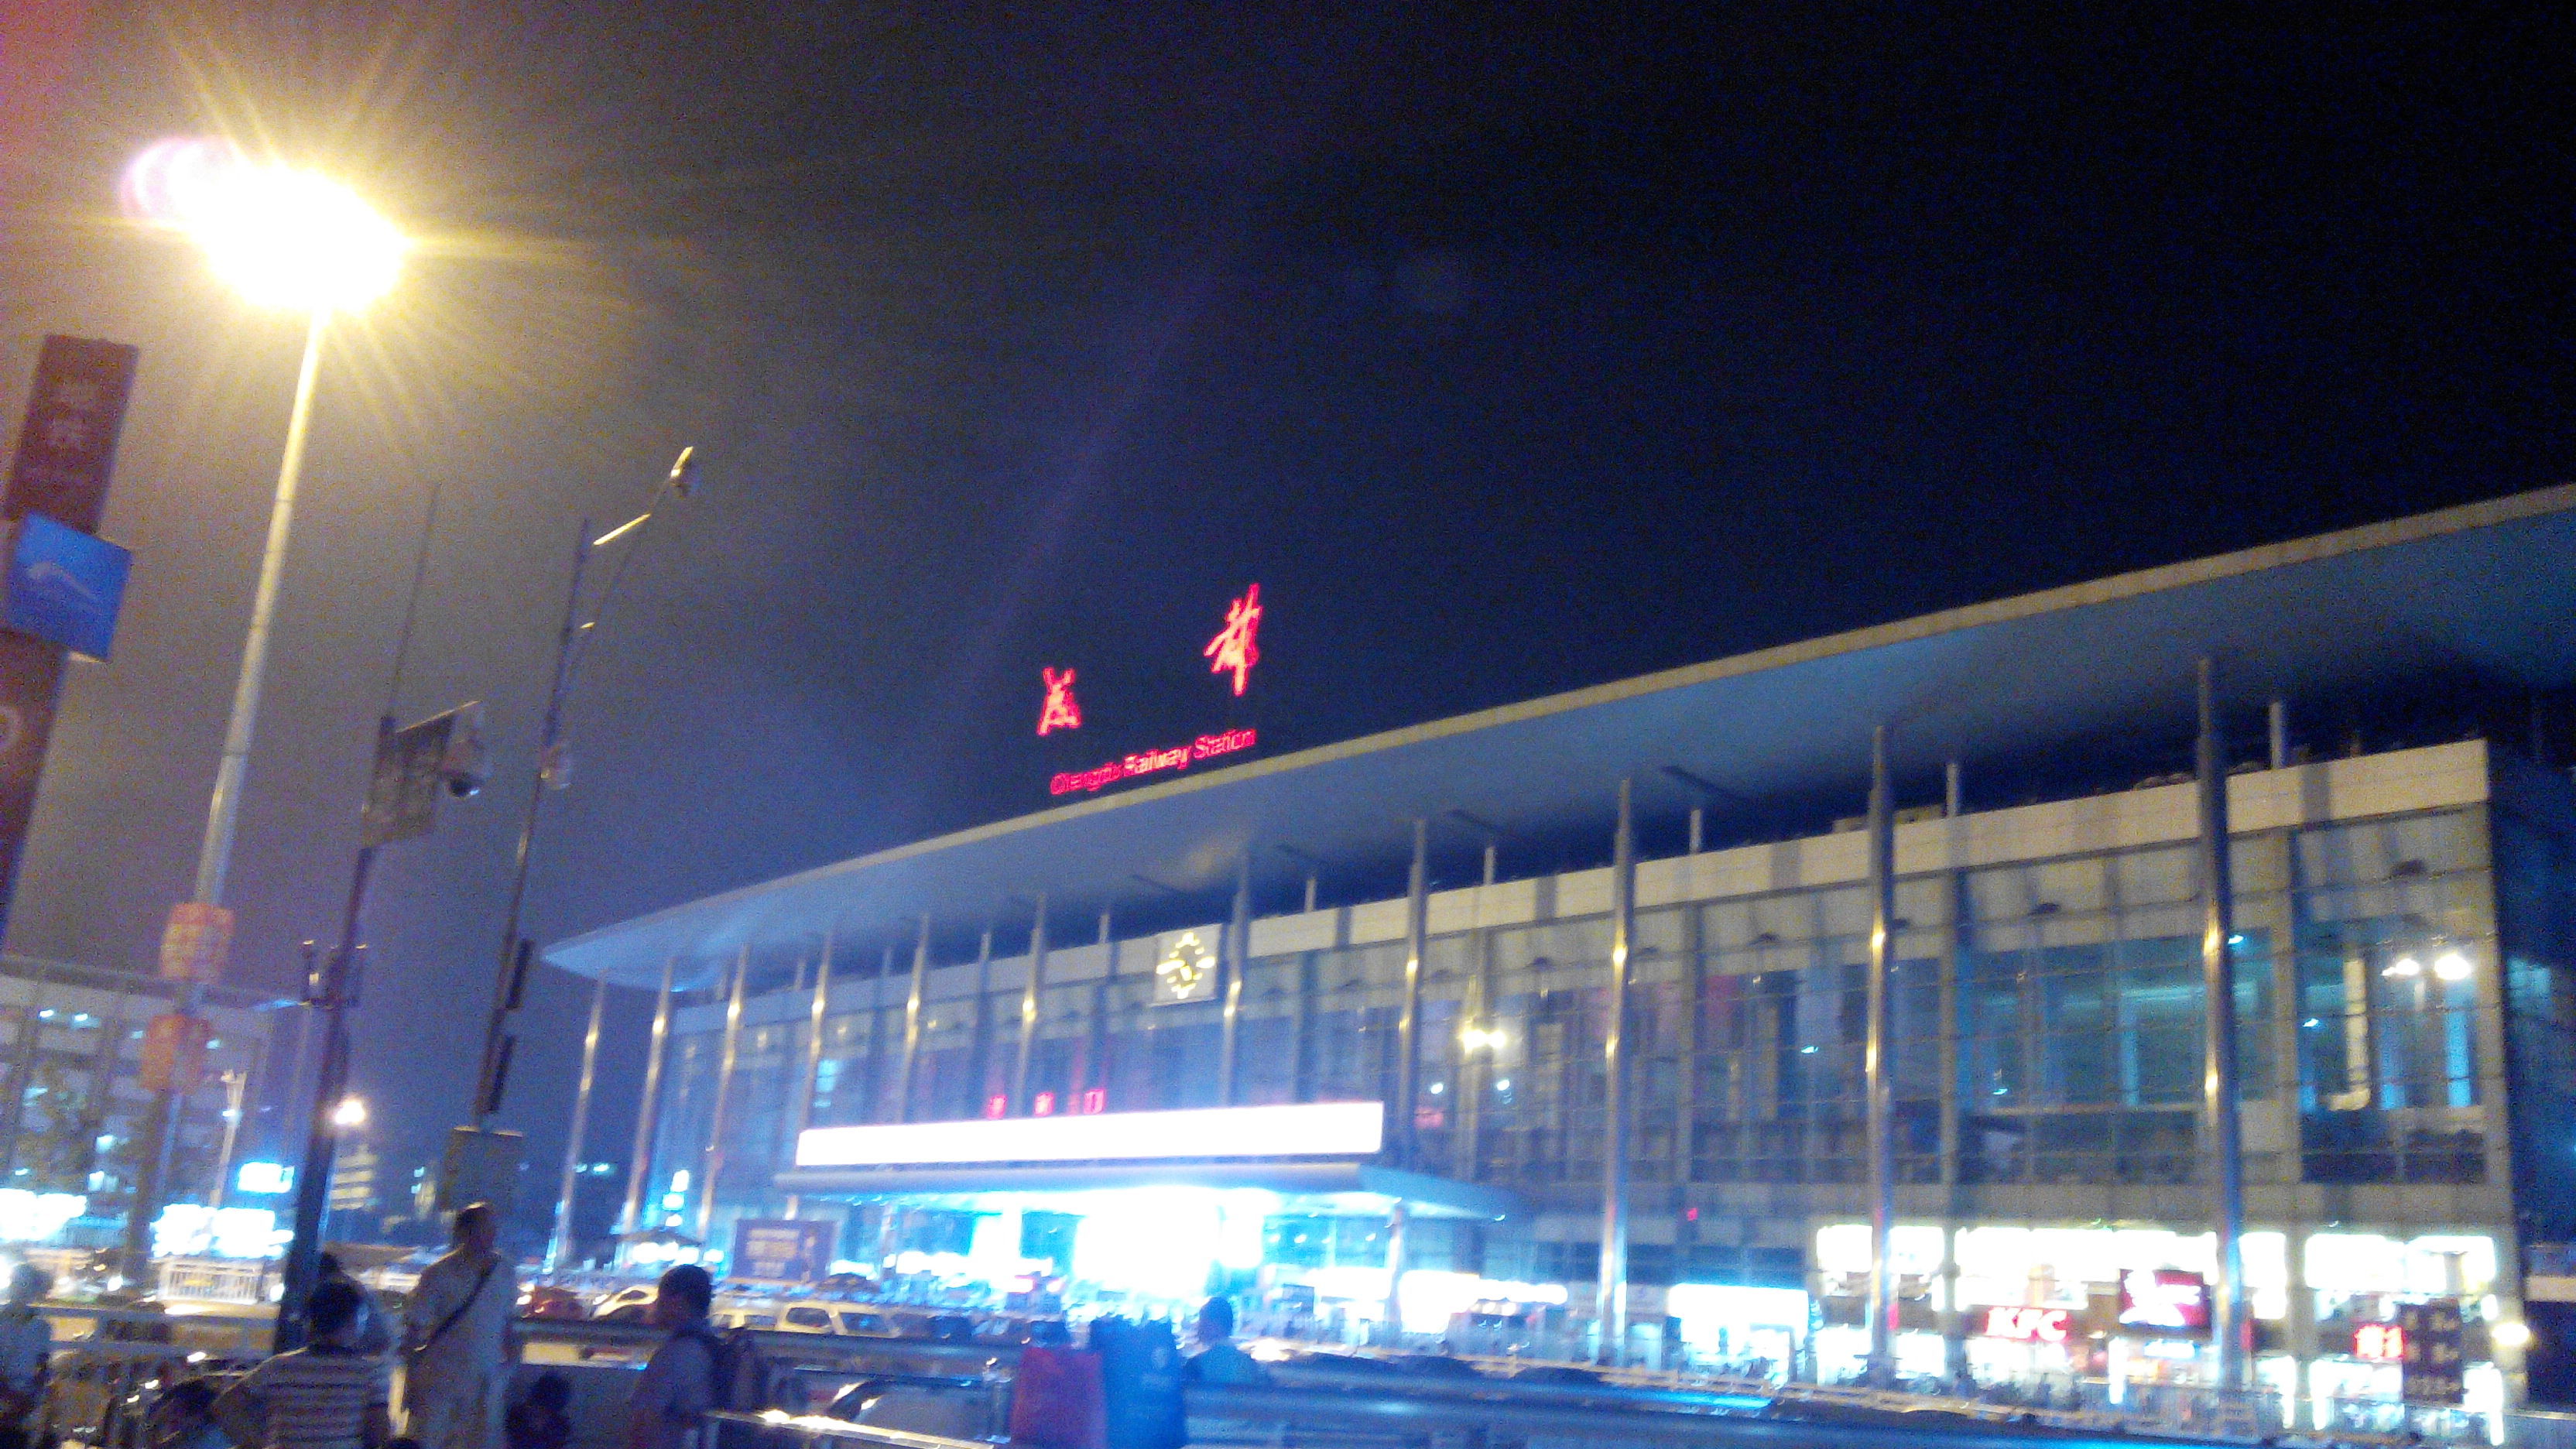 成都火车北站夜景图片